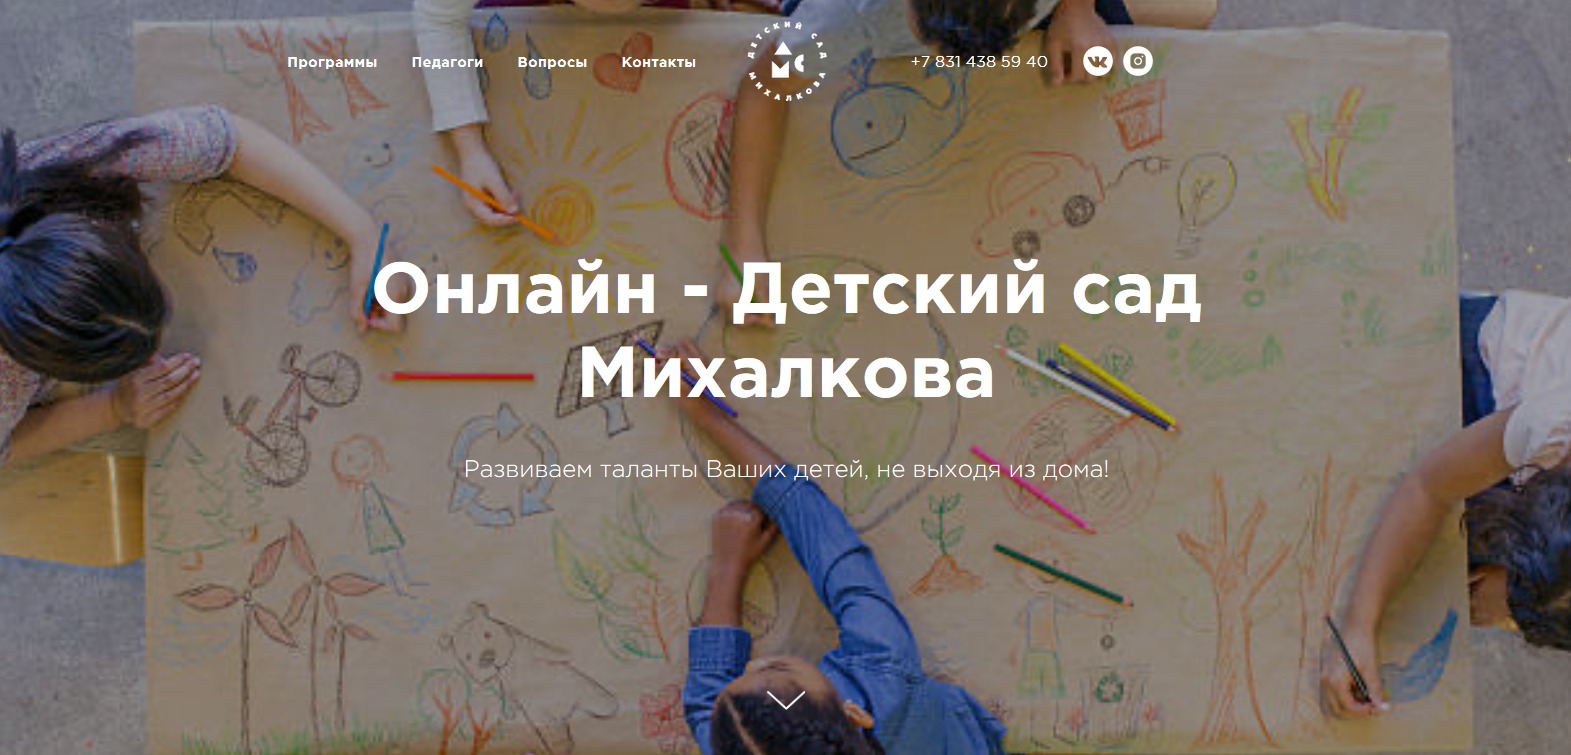 Мы разработали Онлайн - Детский Сад Михалкова mskinder.online